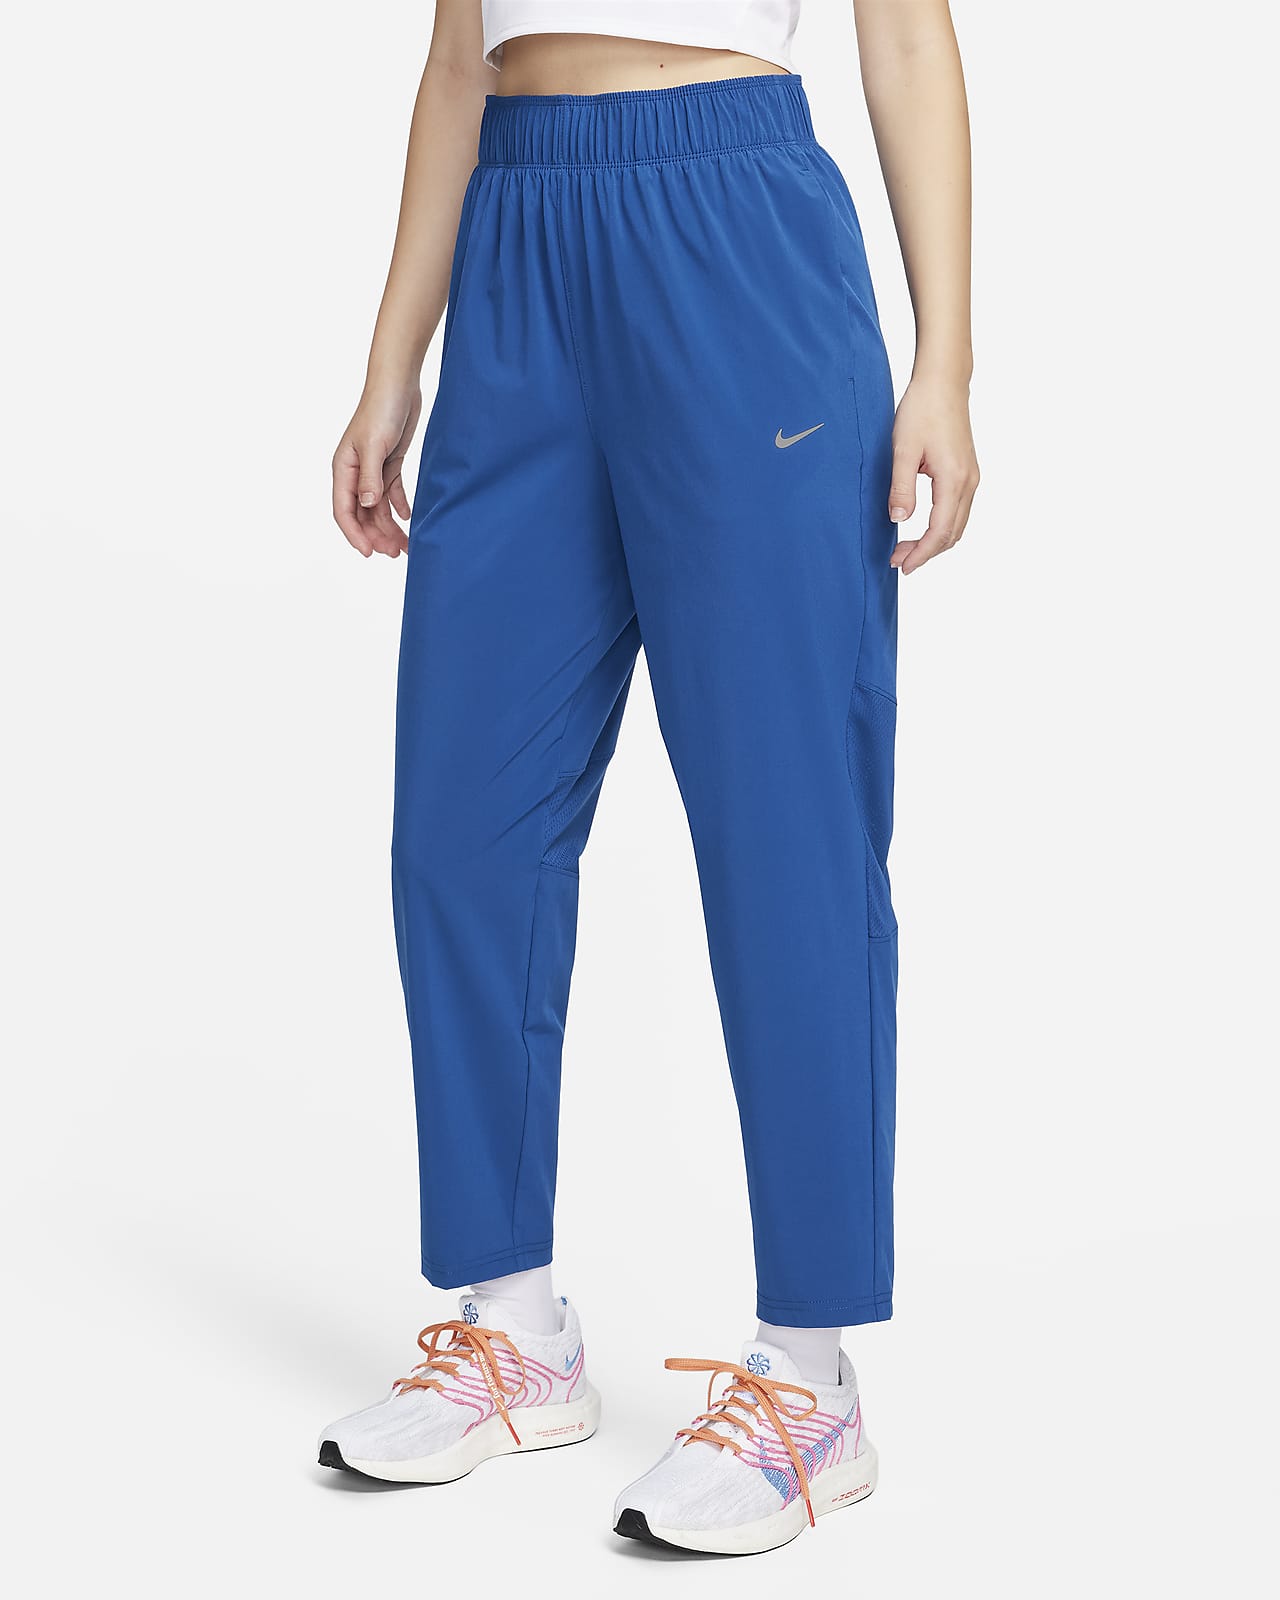 กางเกงวิ่งขายาวเอวปานกลาง 7/8 ส่วนผู้หญิง Nike Dri-FIT Fast